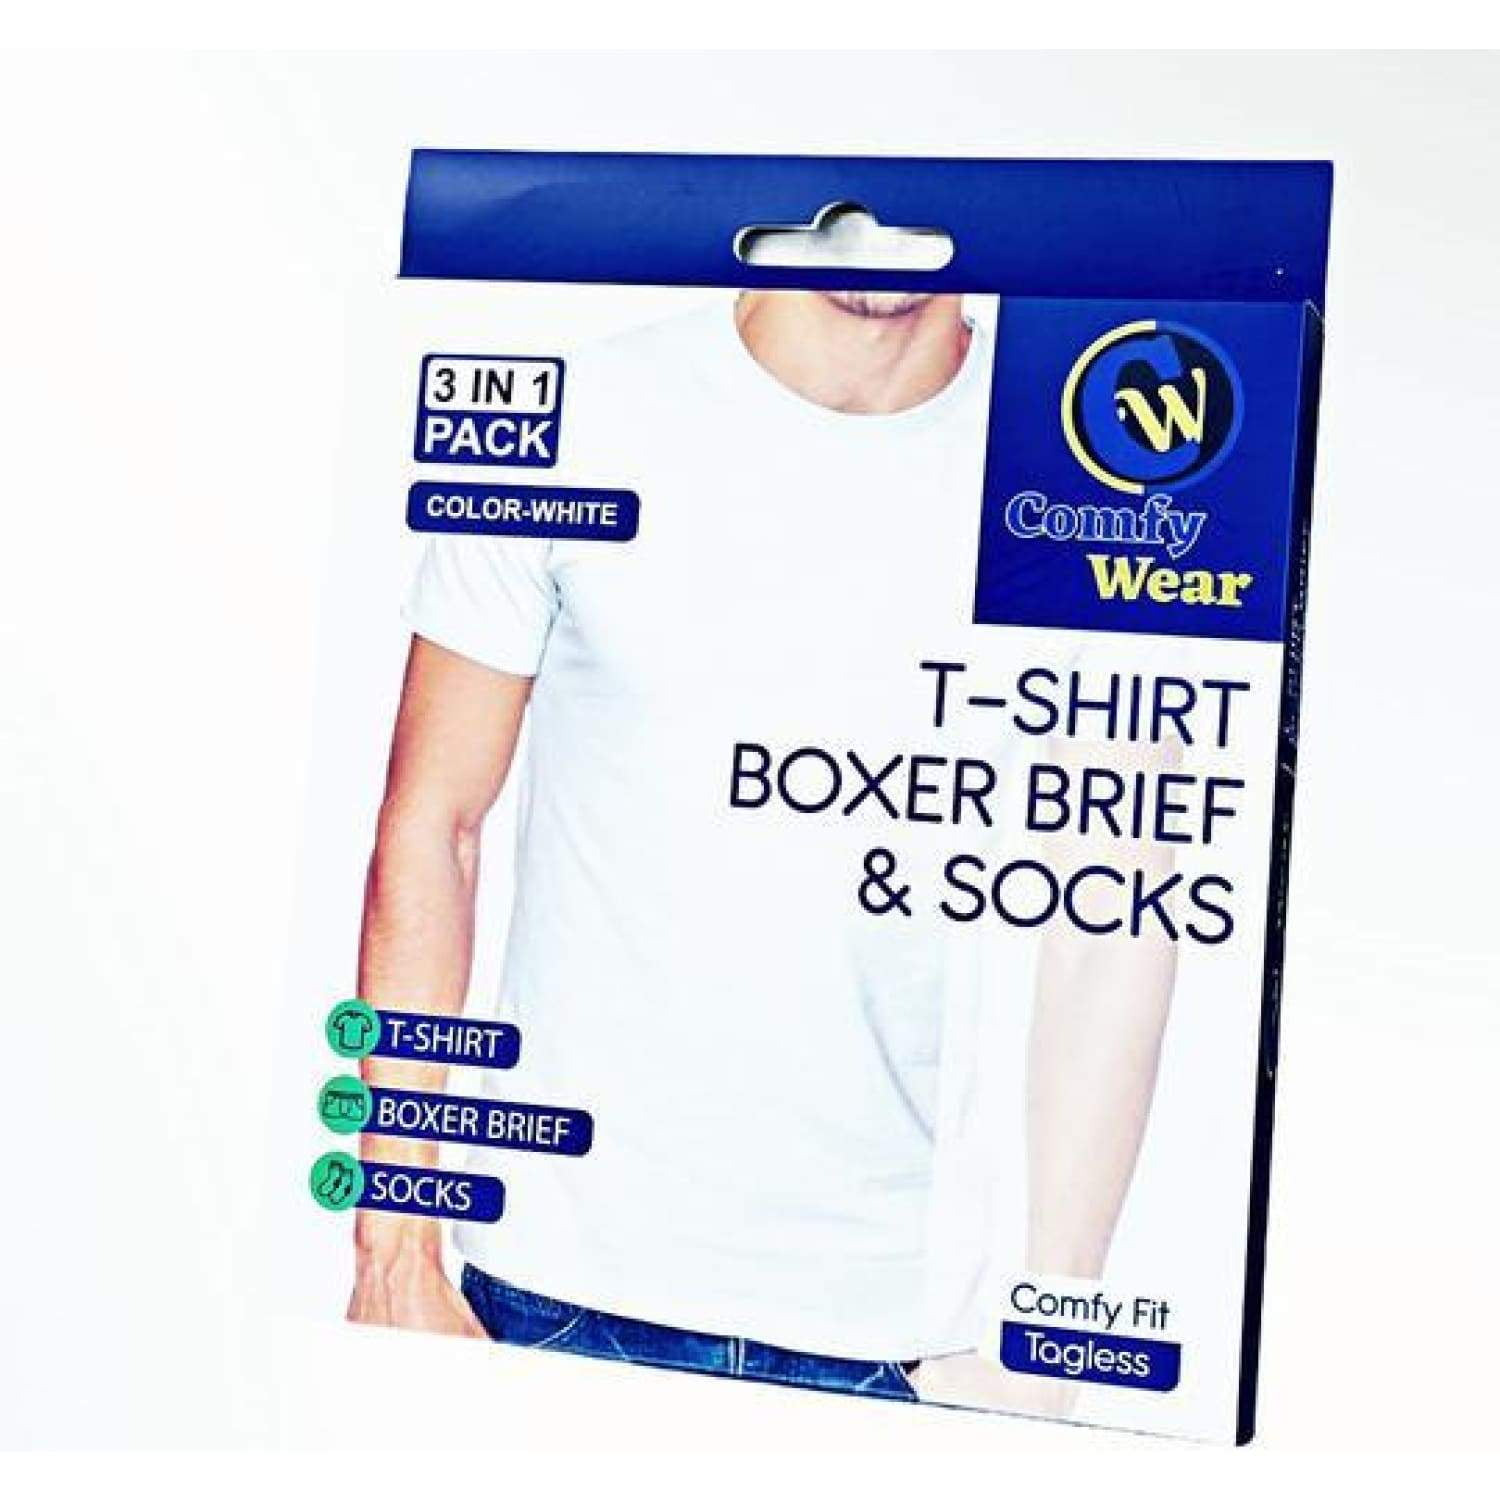 Comfy Wear Men's 3 in 1 Pack T-shirt, Boxer Brief & Socks for Men